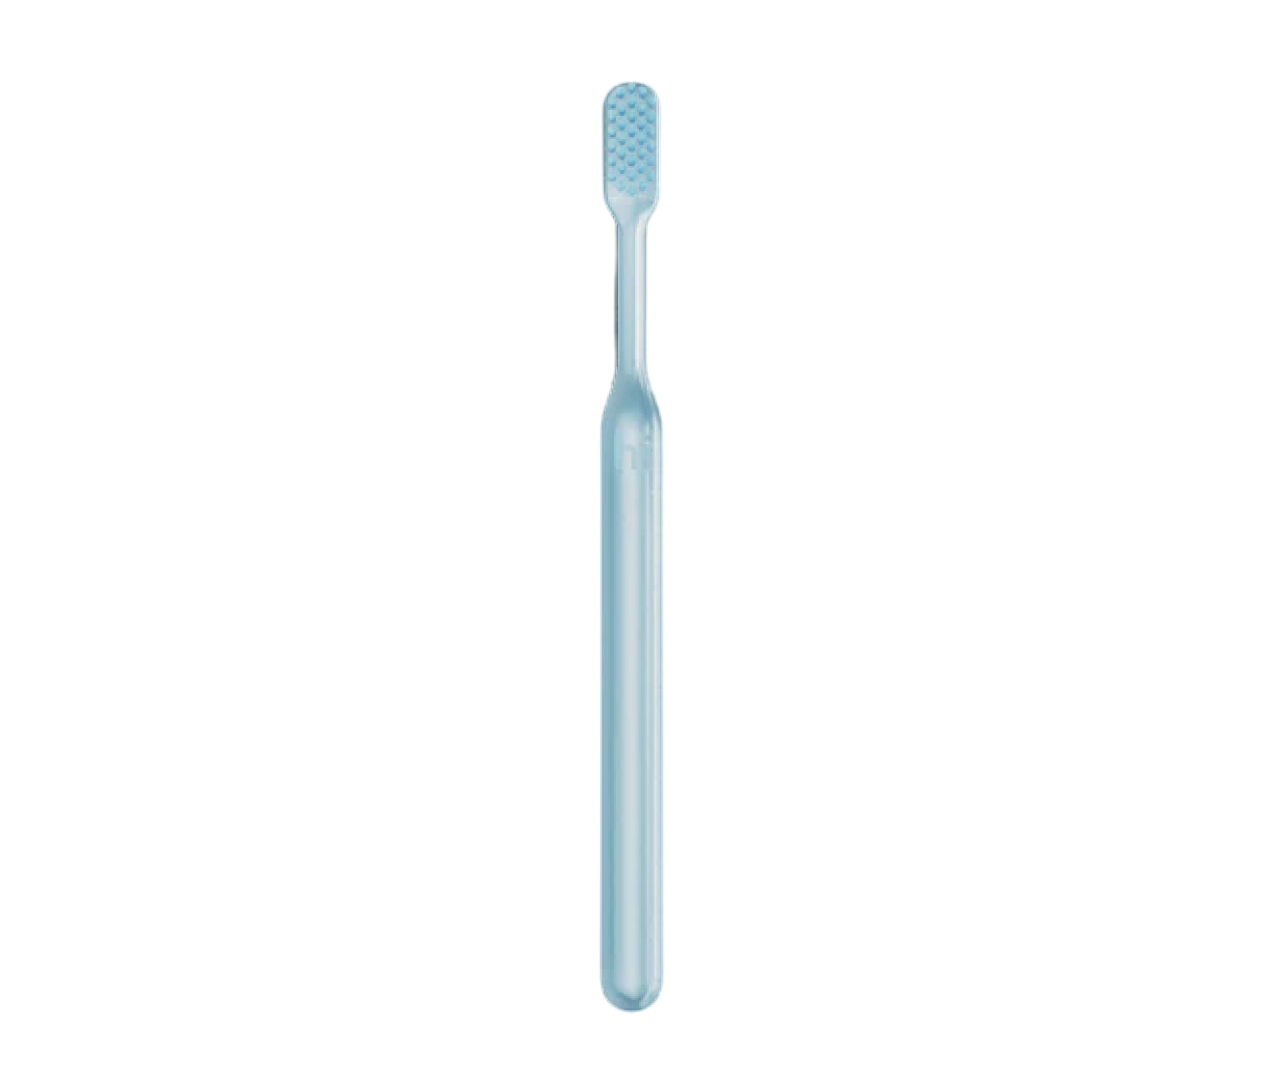 hismile Toothbrush - Blue